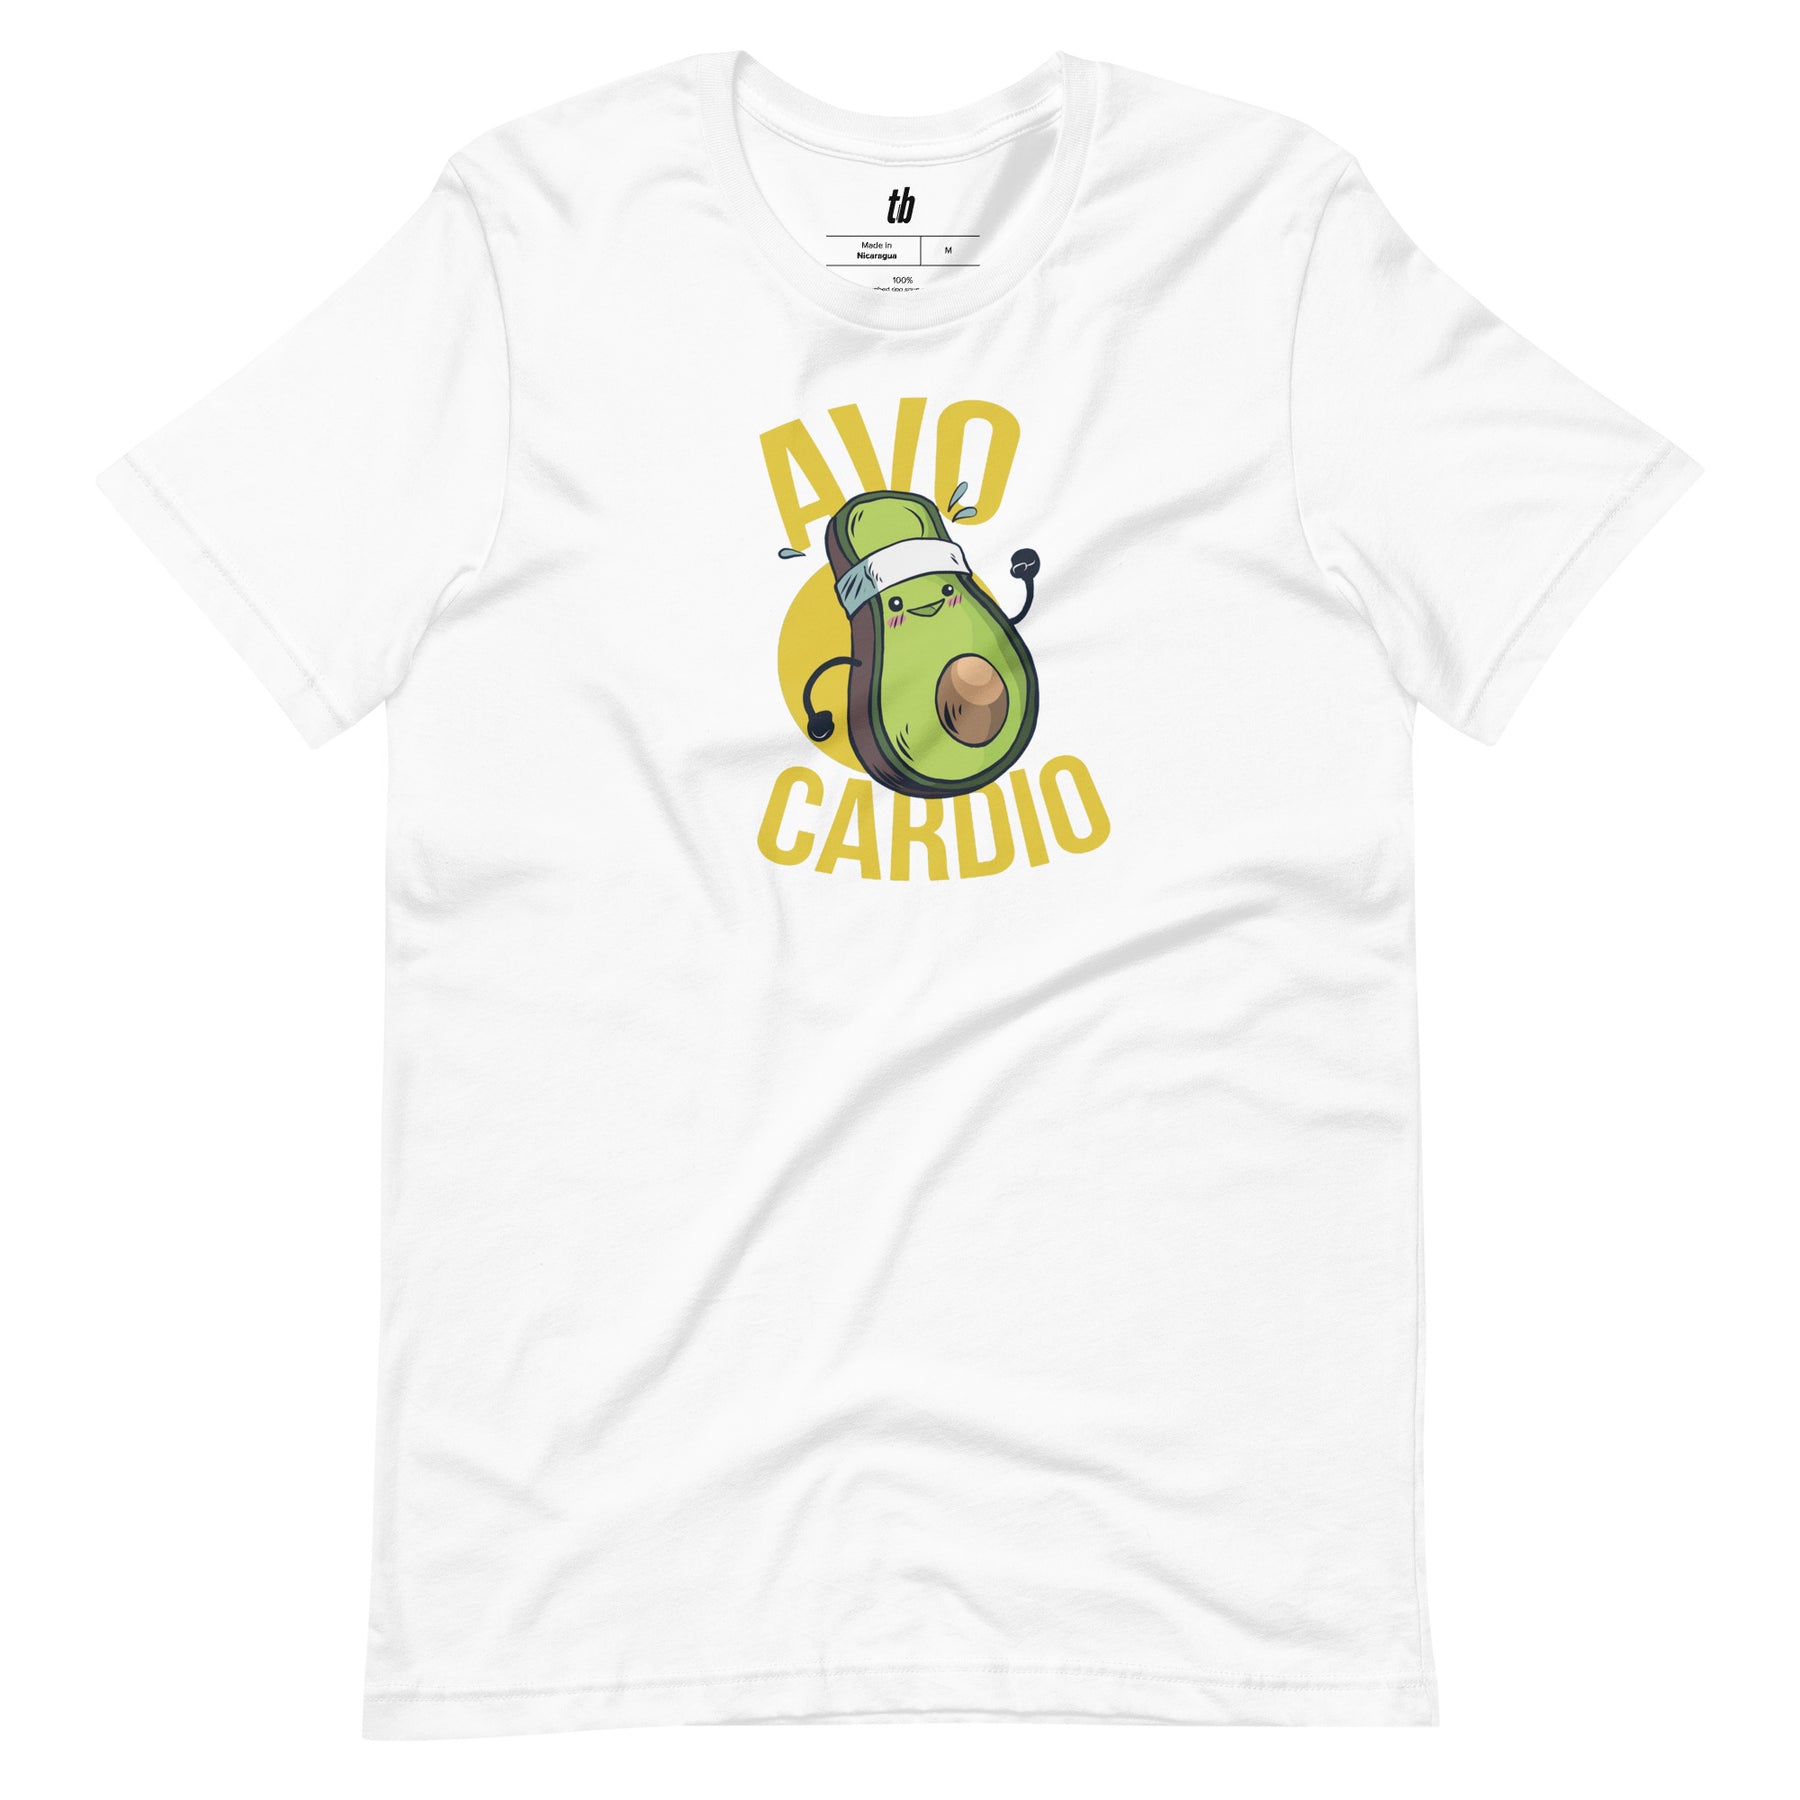 Avocardio T-Shirt - Teebop